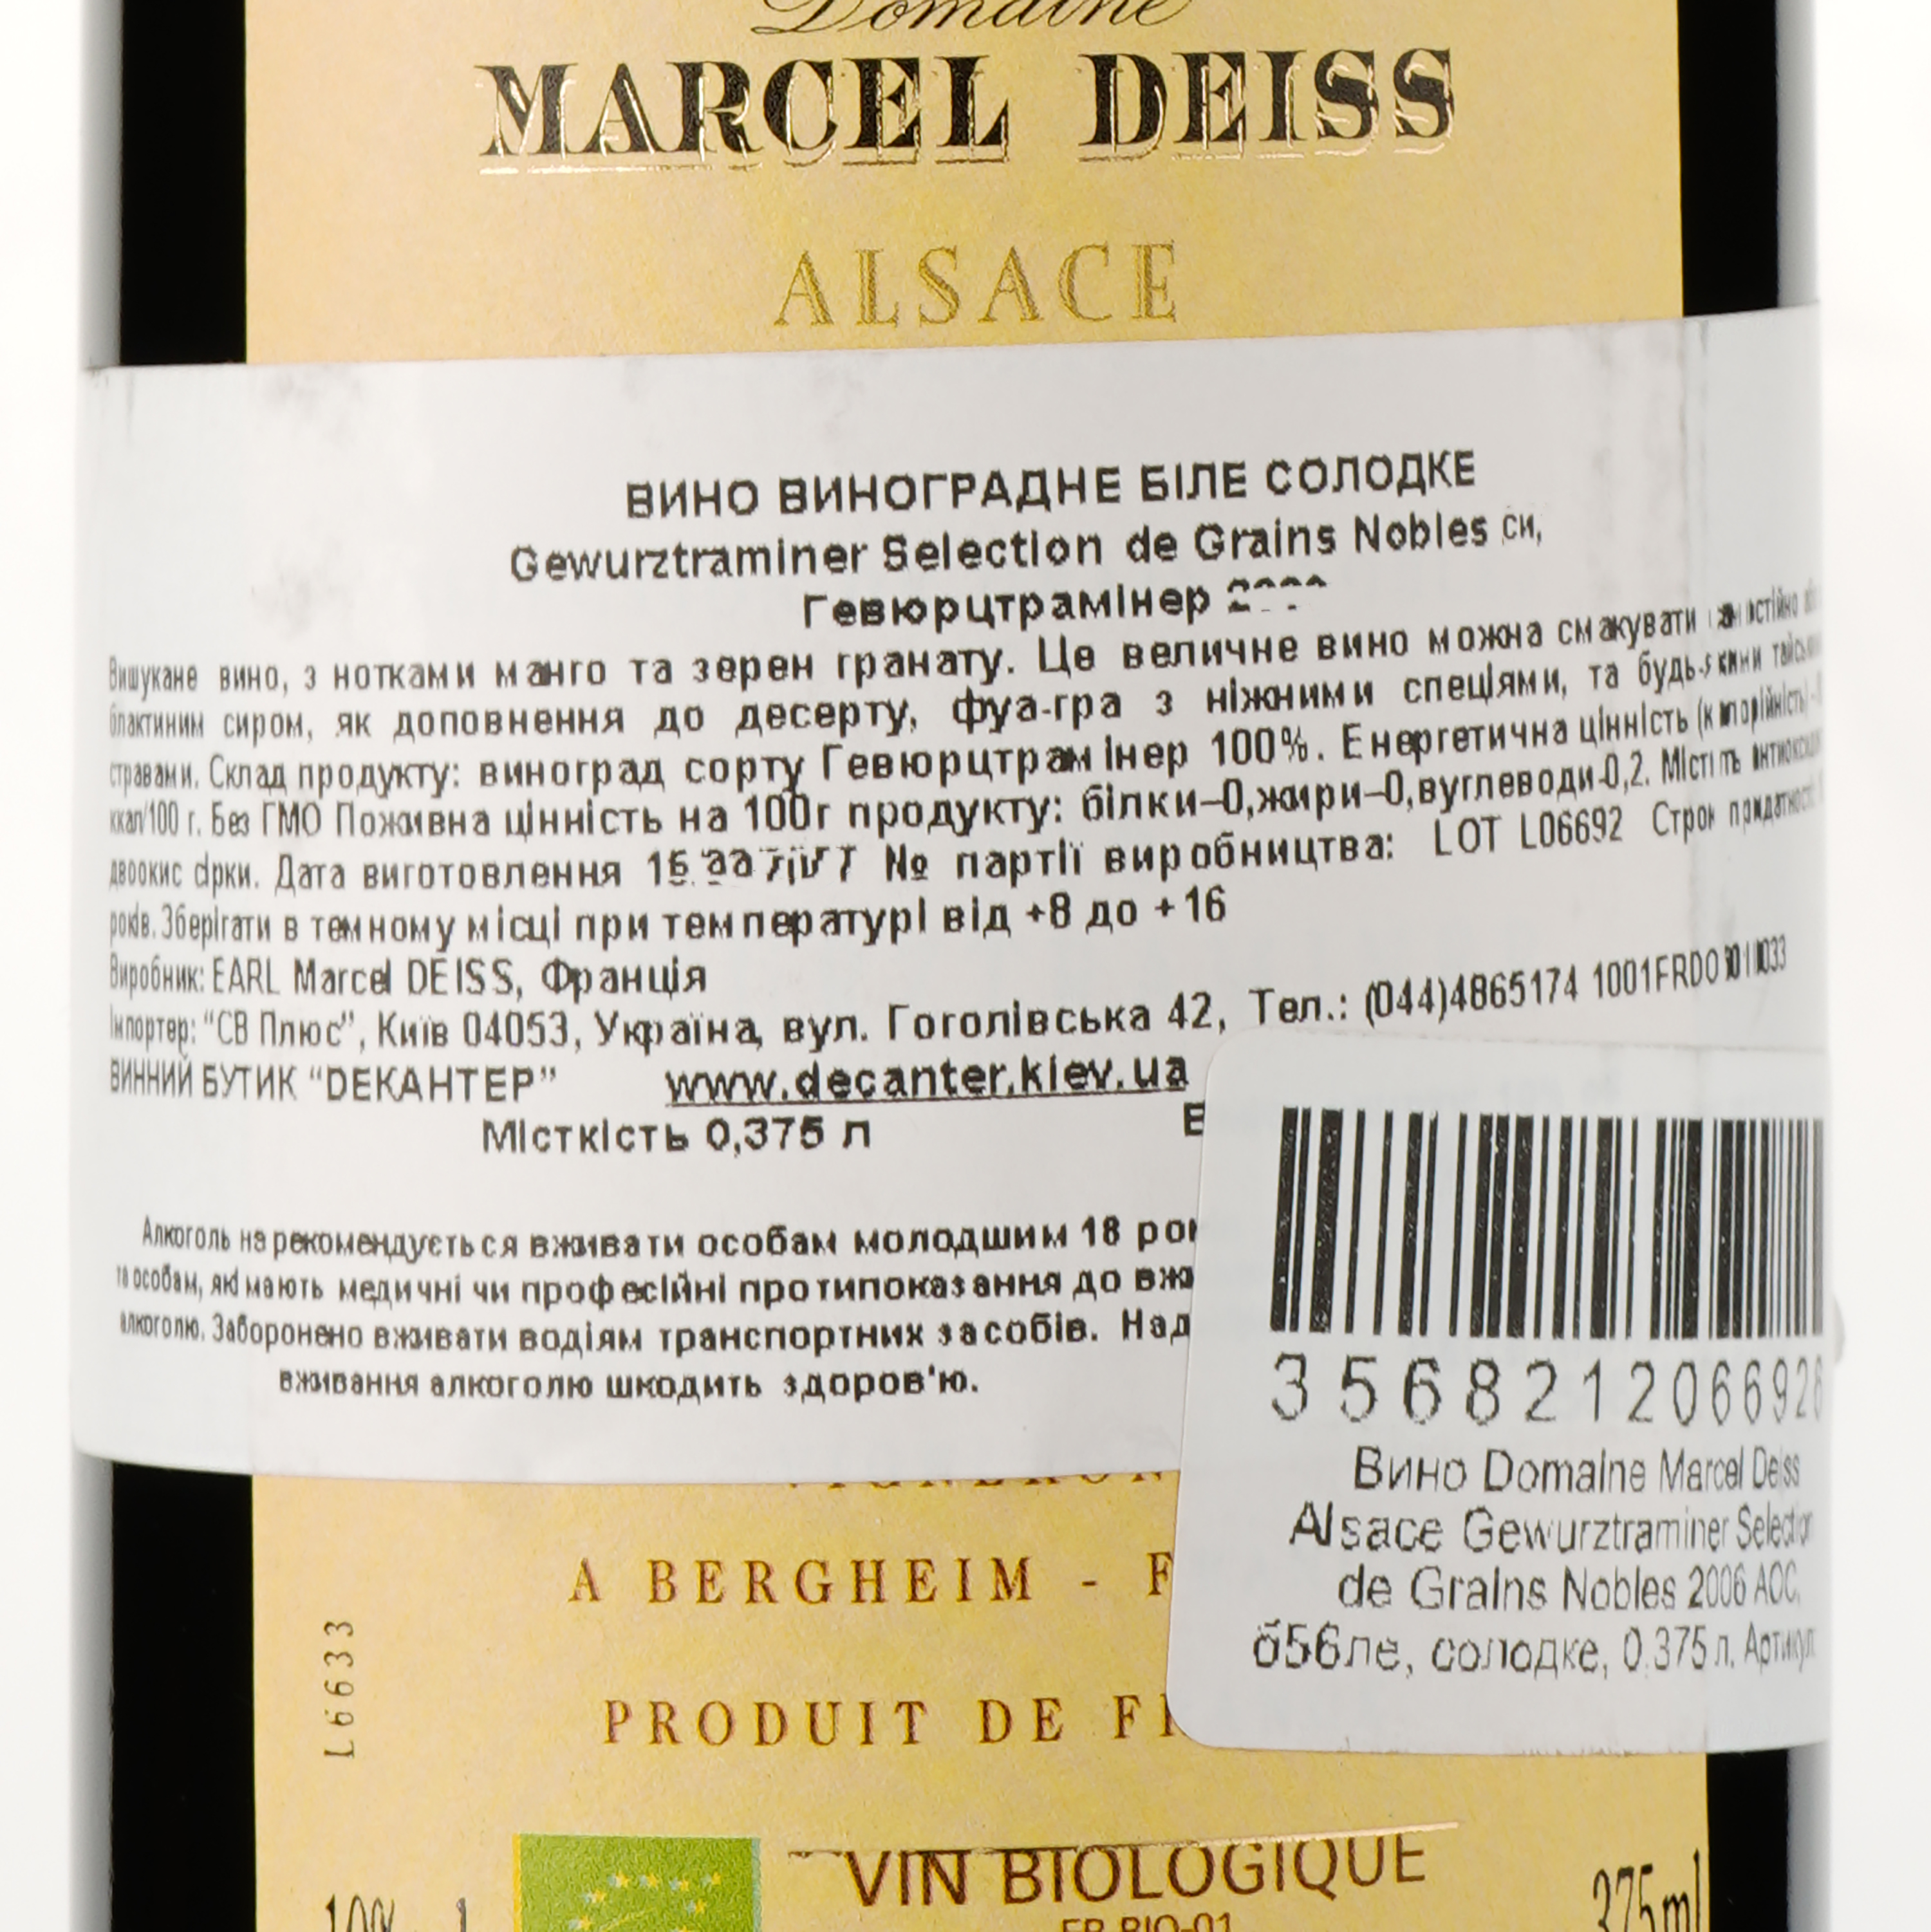 Вино Domaine Marcel Deiss Alsace Gewurztraminer Selection de Grains Nobles 2006 AOC, белое, сладкое, 0,375 л - фото 3